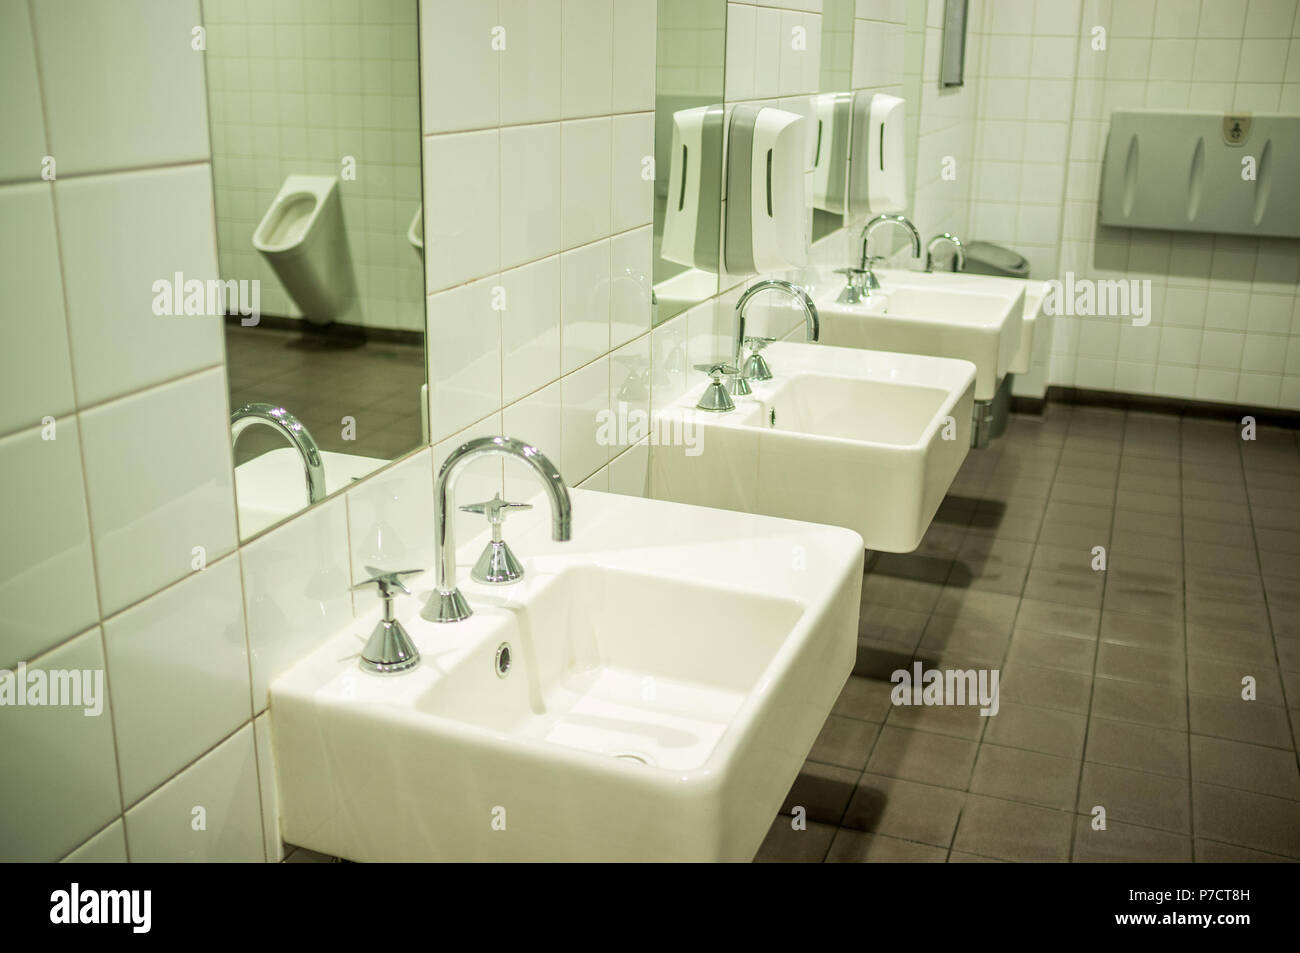 Hommes en blanc avec toilettes et lavabos élégant miroir en reflétant l'urinoir Banque D'Images